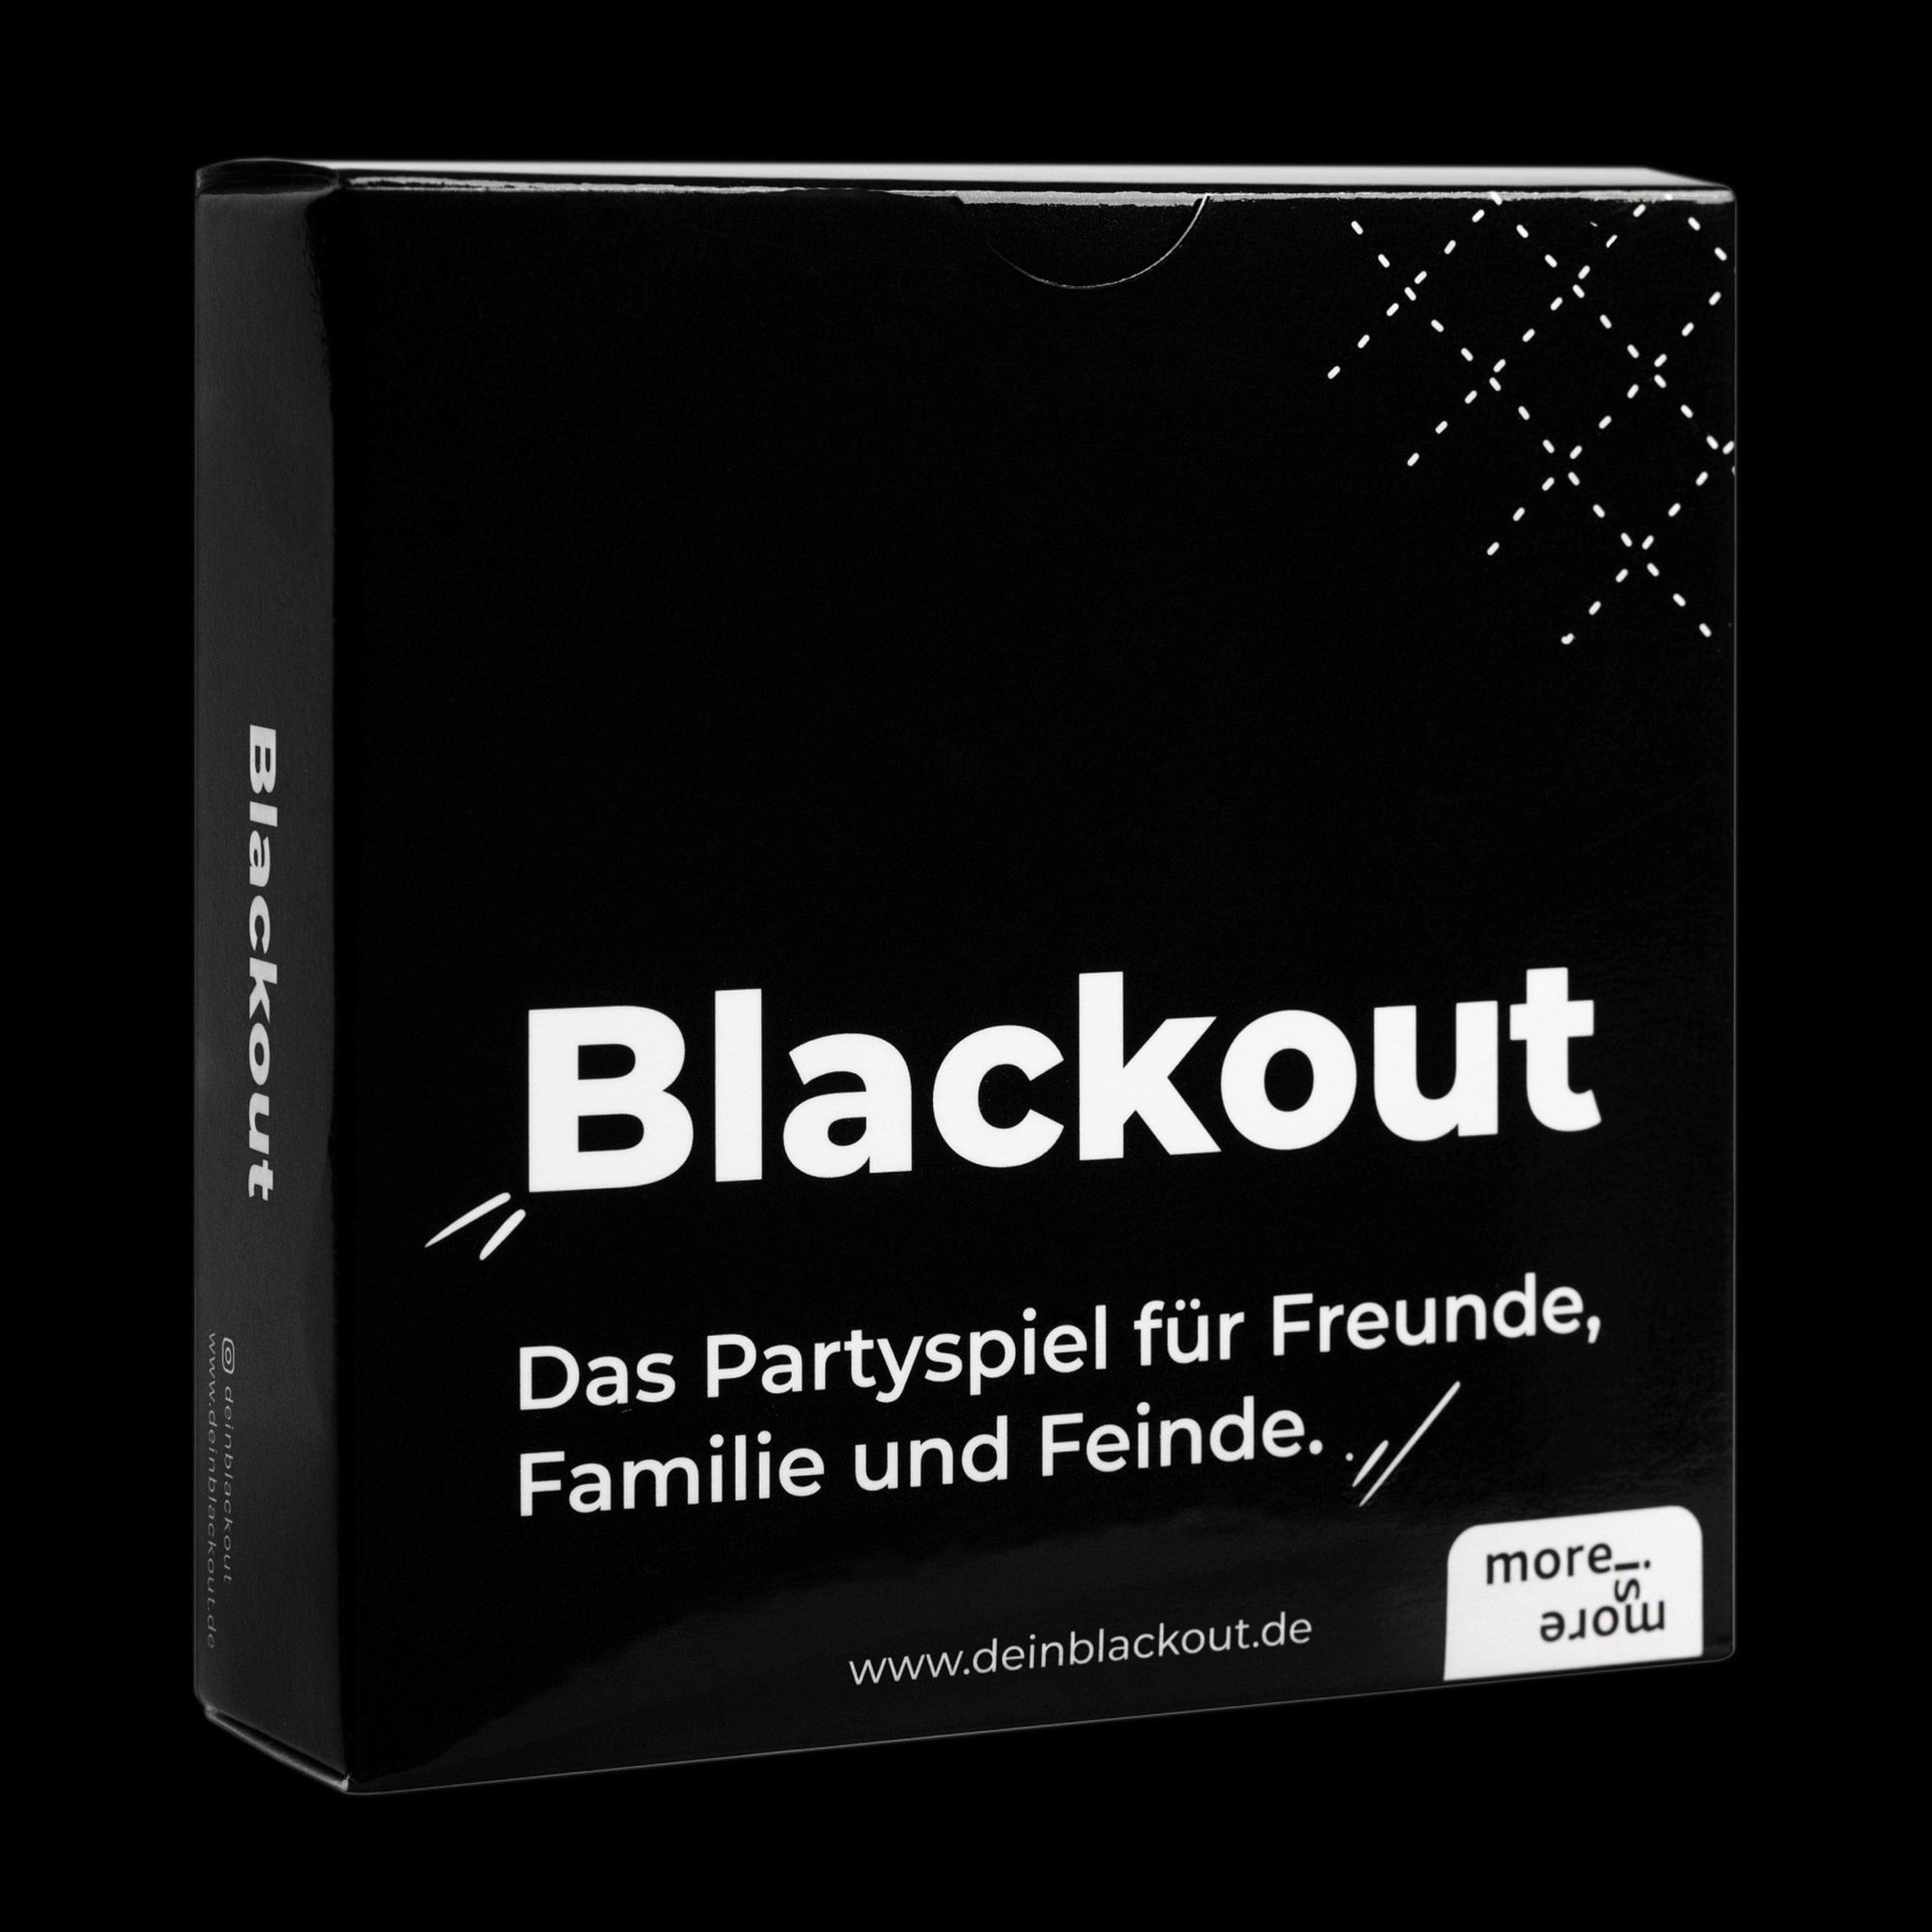 Verpackung des Blackout Partyspiels